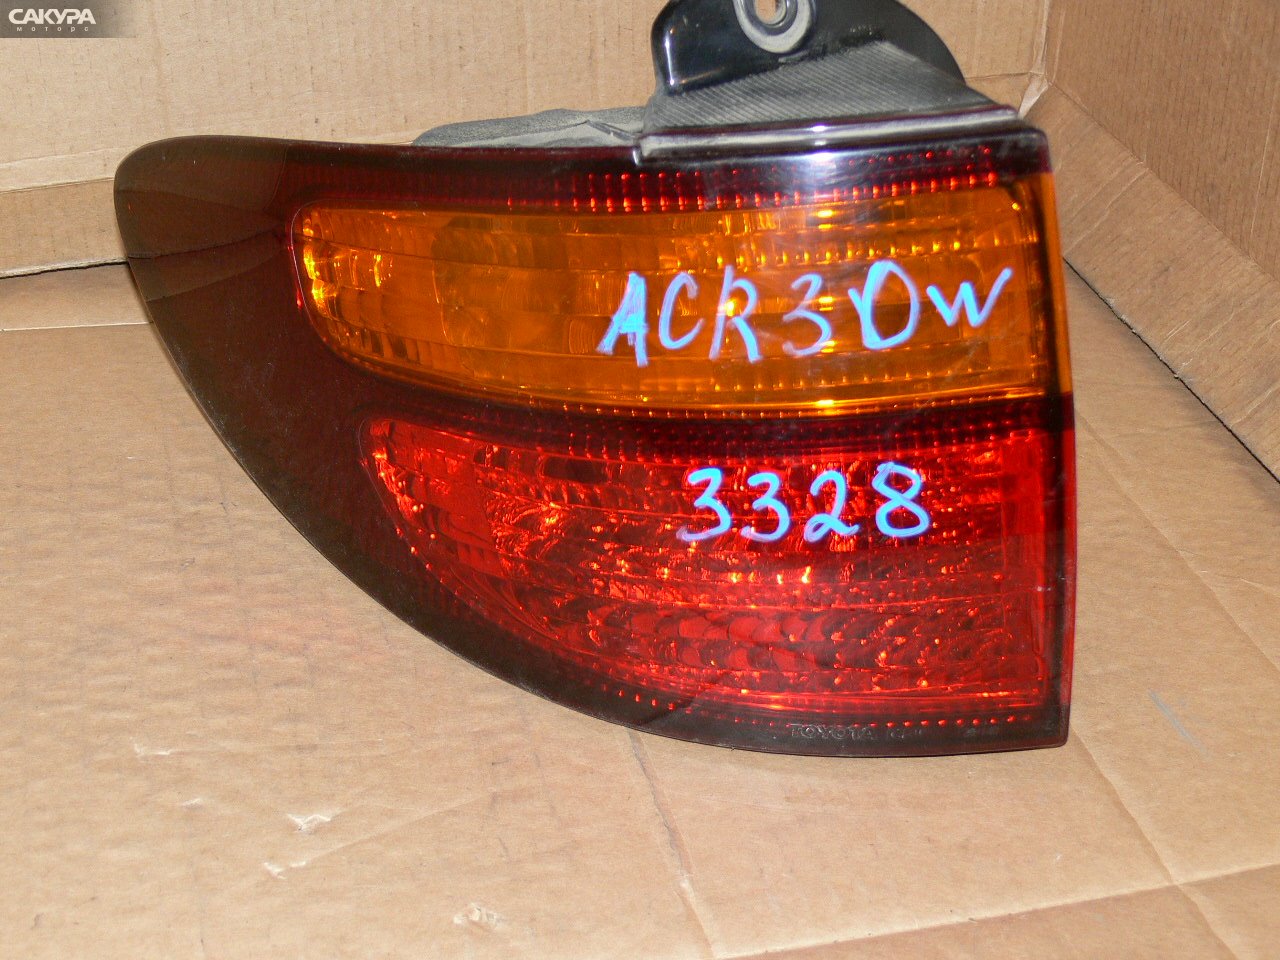 Фонарь стоп-сигнала левый Toyota Estima ACR30W 28-140: купить в Сакура Иркутск.